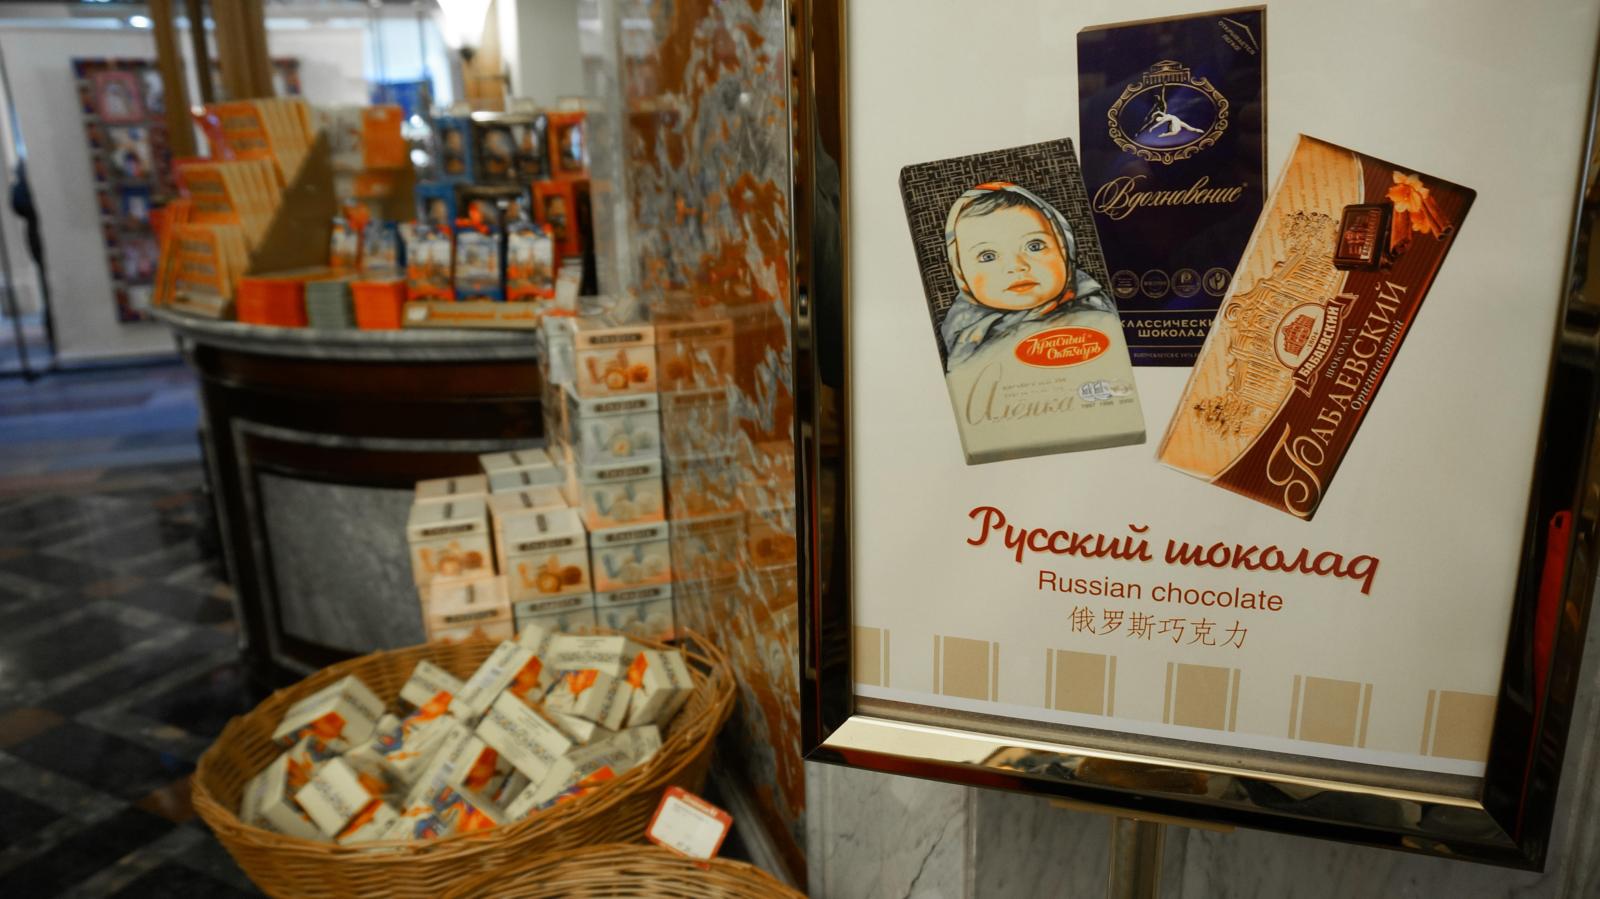 Какие товары китайцы покупают в России на сувениры - image 2